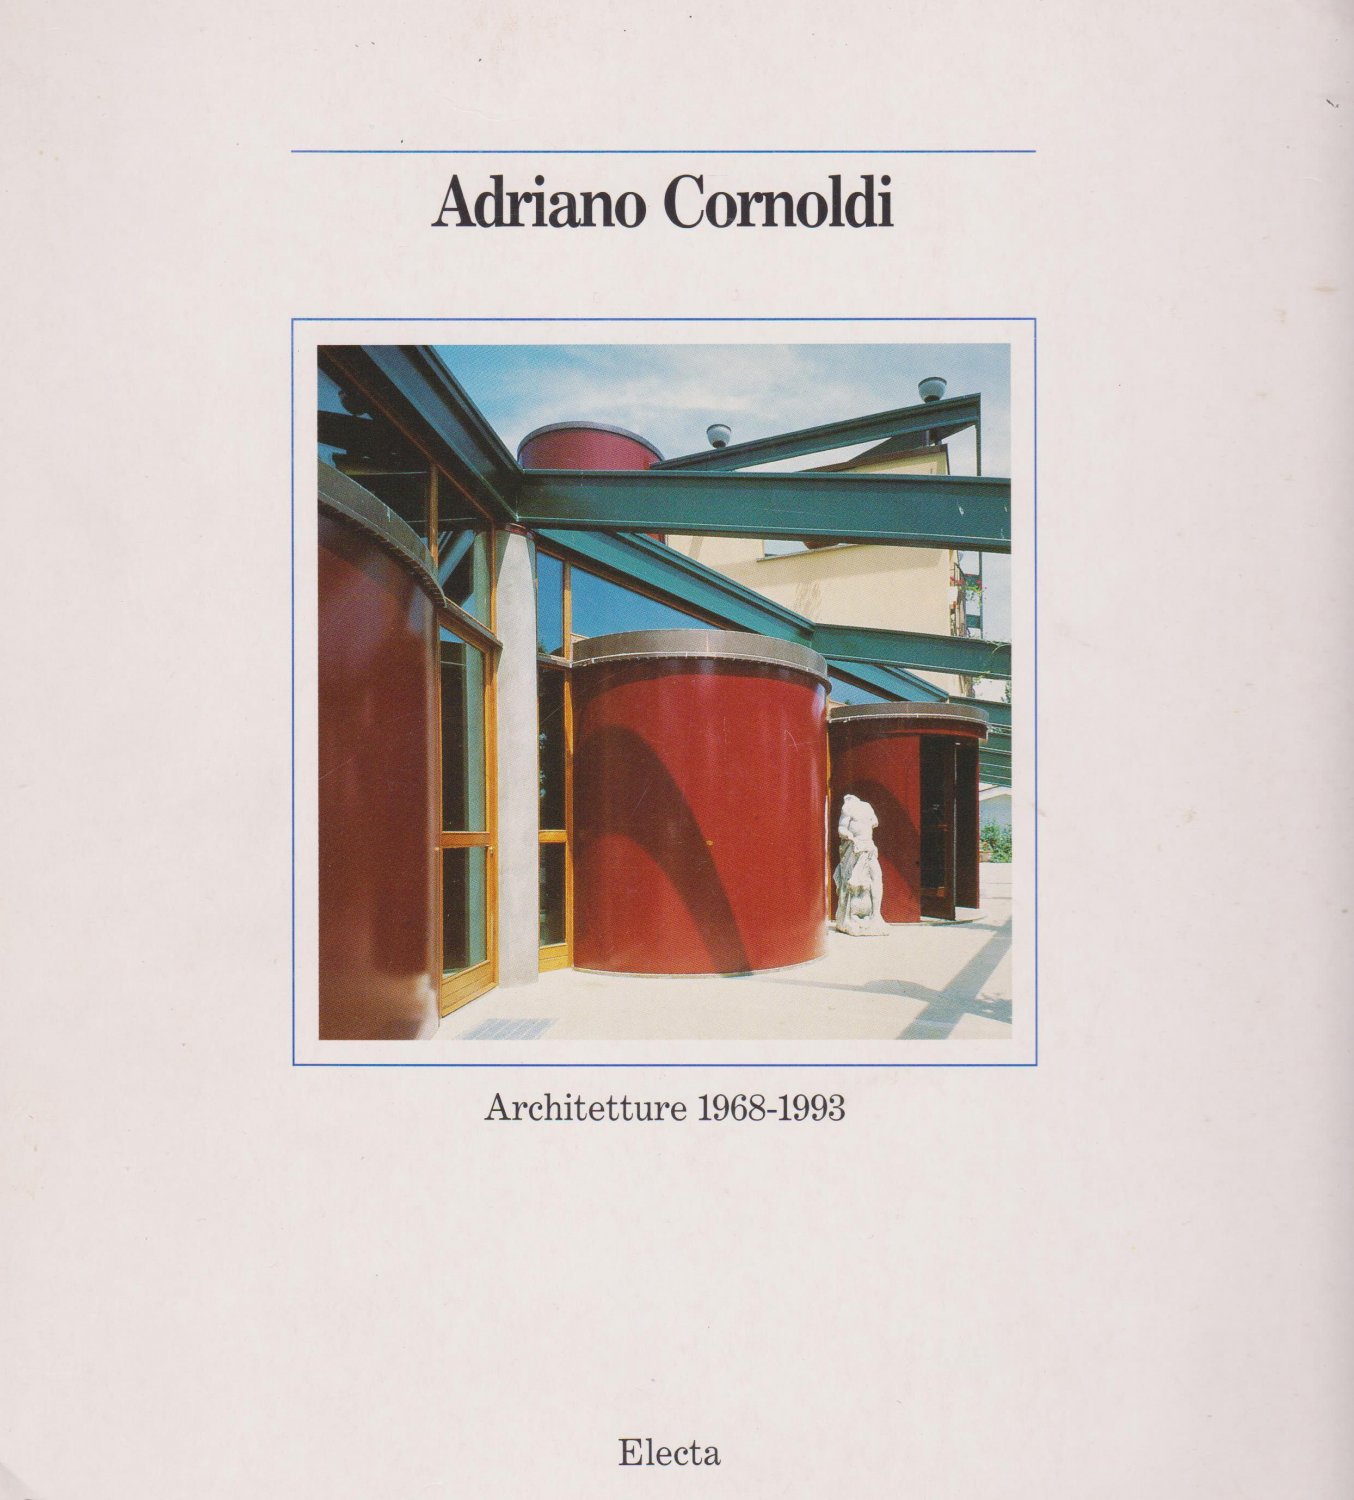 TENTORI, Francesco (Editor):  Adriano Cornoldi. Architetture 1968-1993. 